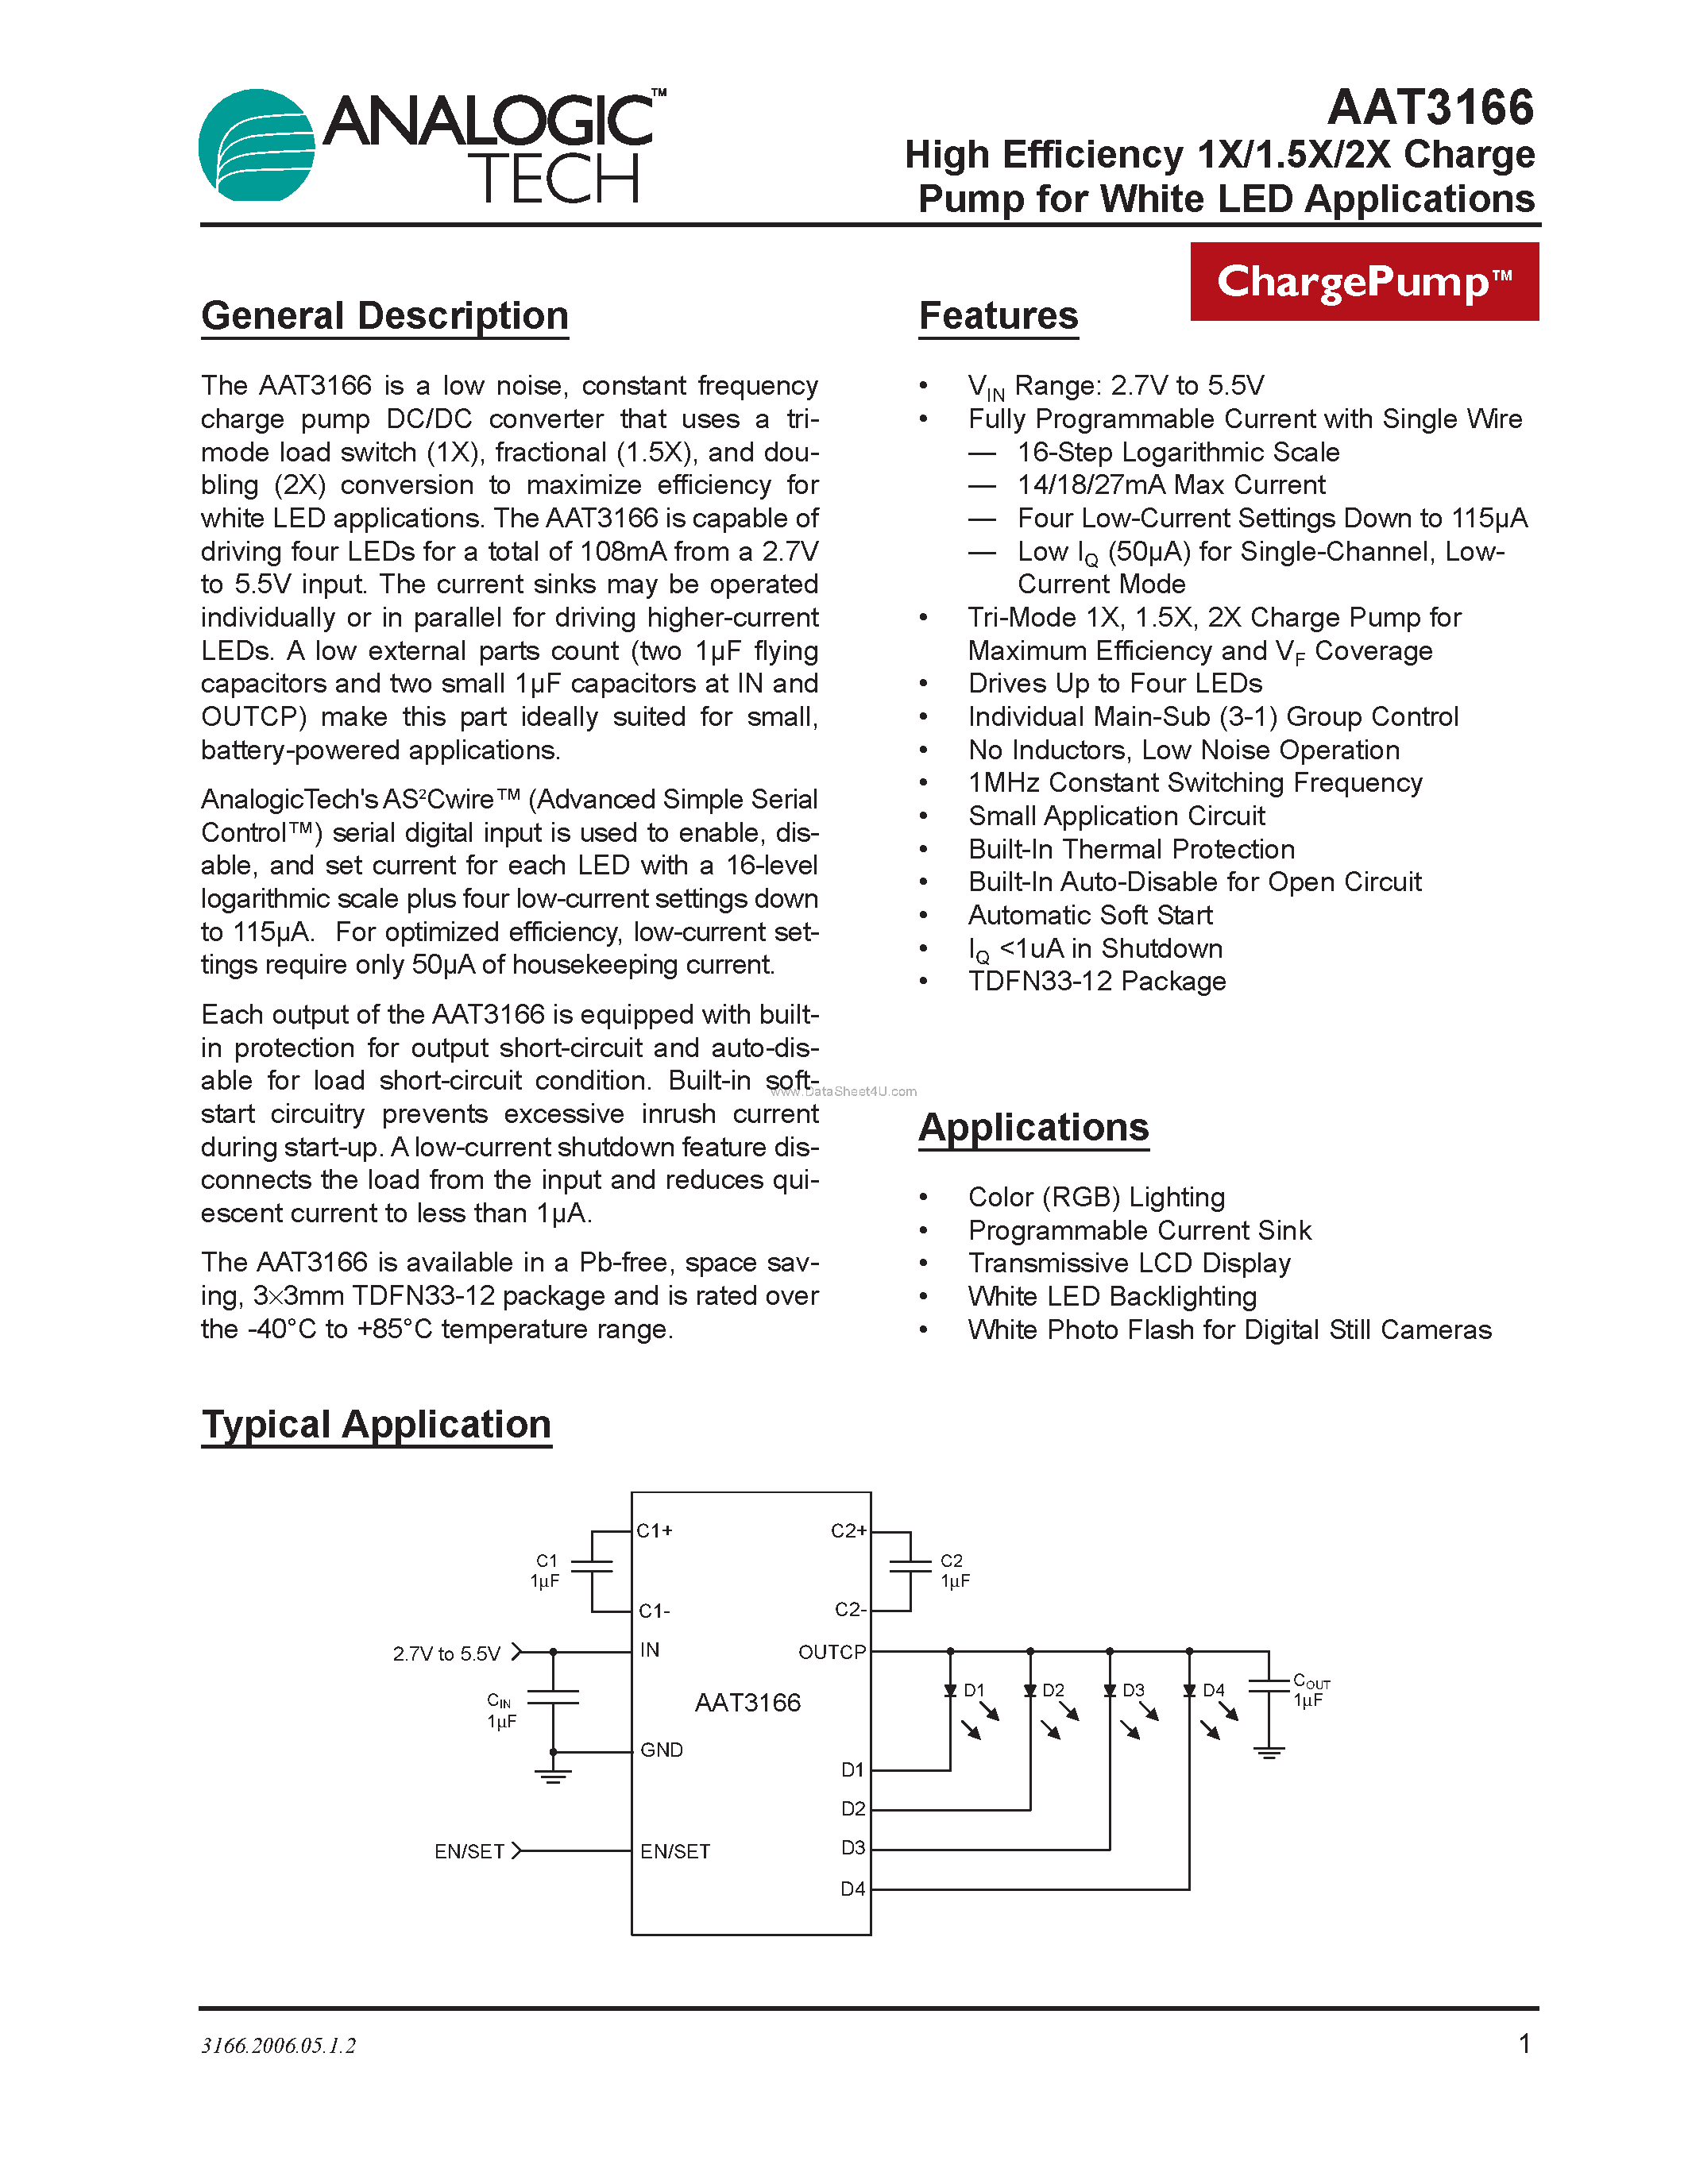 Даташит AAT3166 - High Efficiency 1X/1.5X/2X Charge Pump страница 1